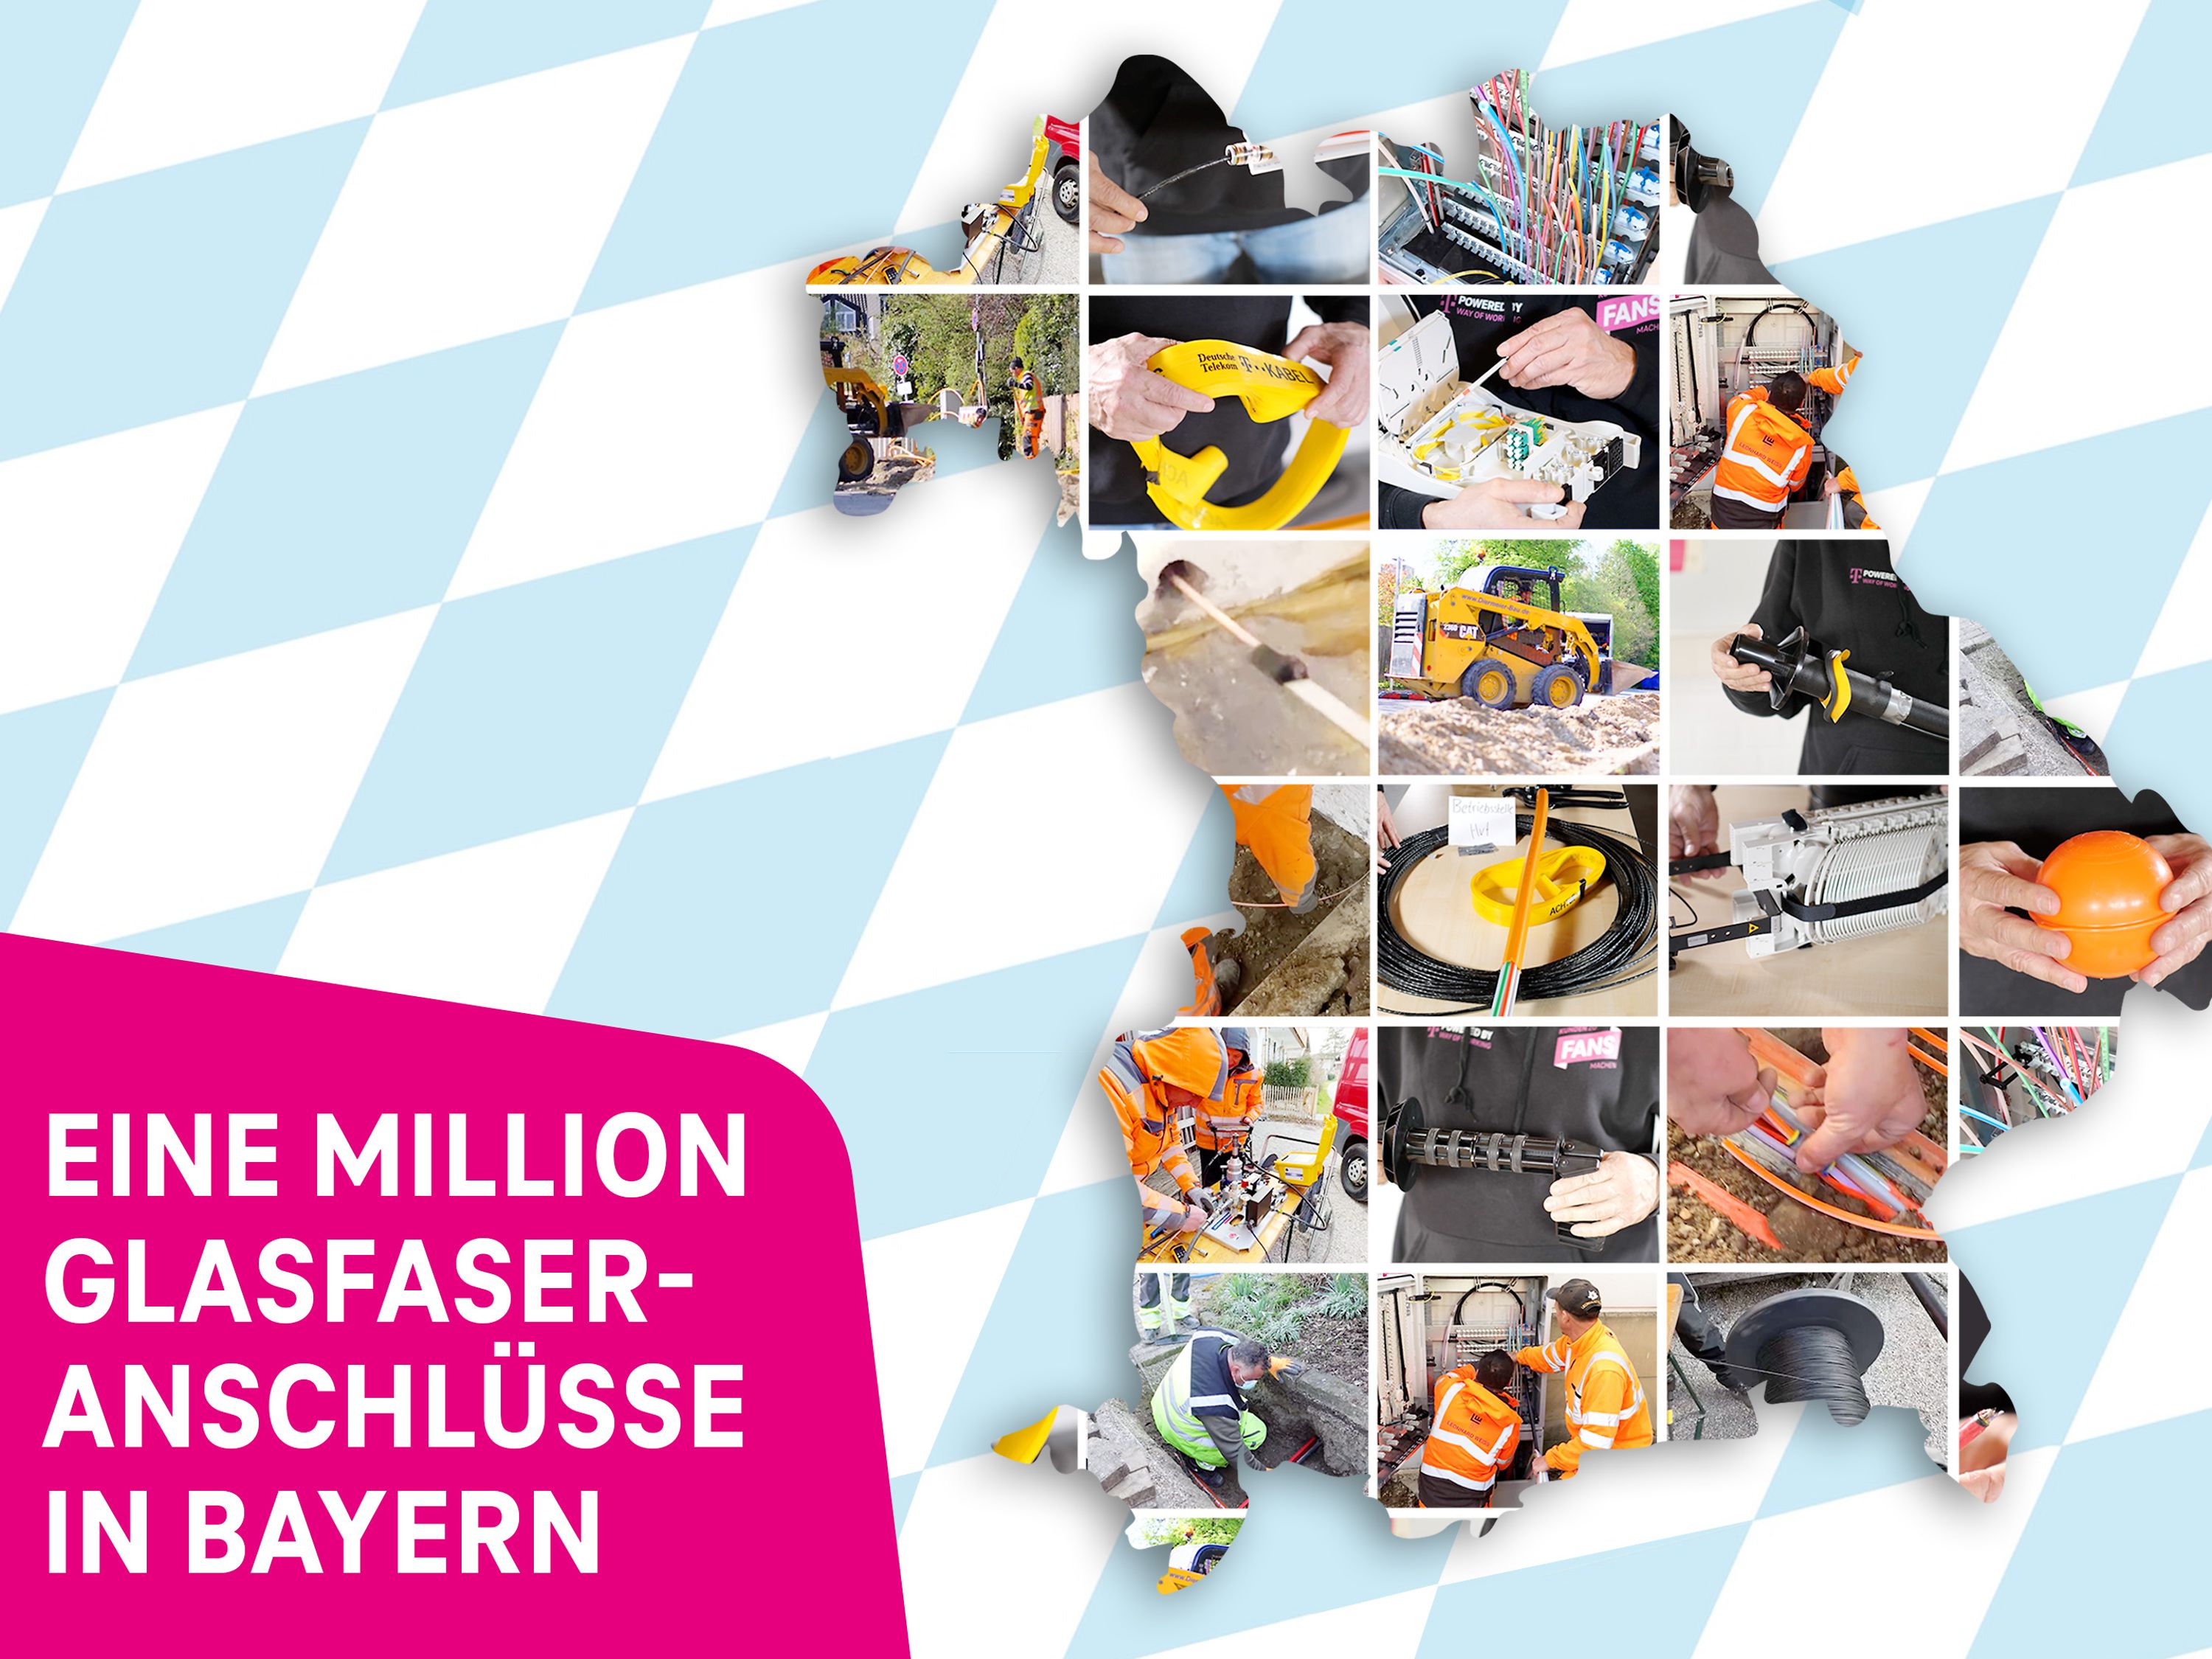 Telekom Glasfaserausbau Bayern: Meilenstein für Glasfaser-Ausbau in Bayern --1 Millionen reine Glasfaser-Anschlüsse